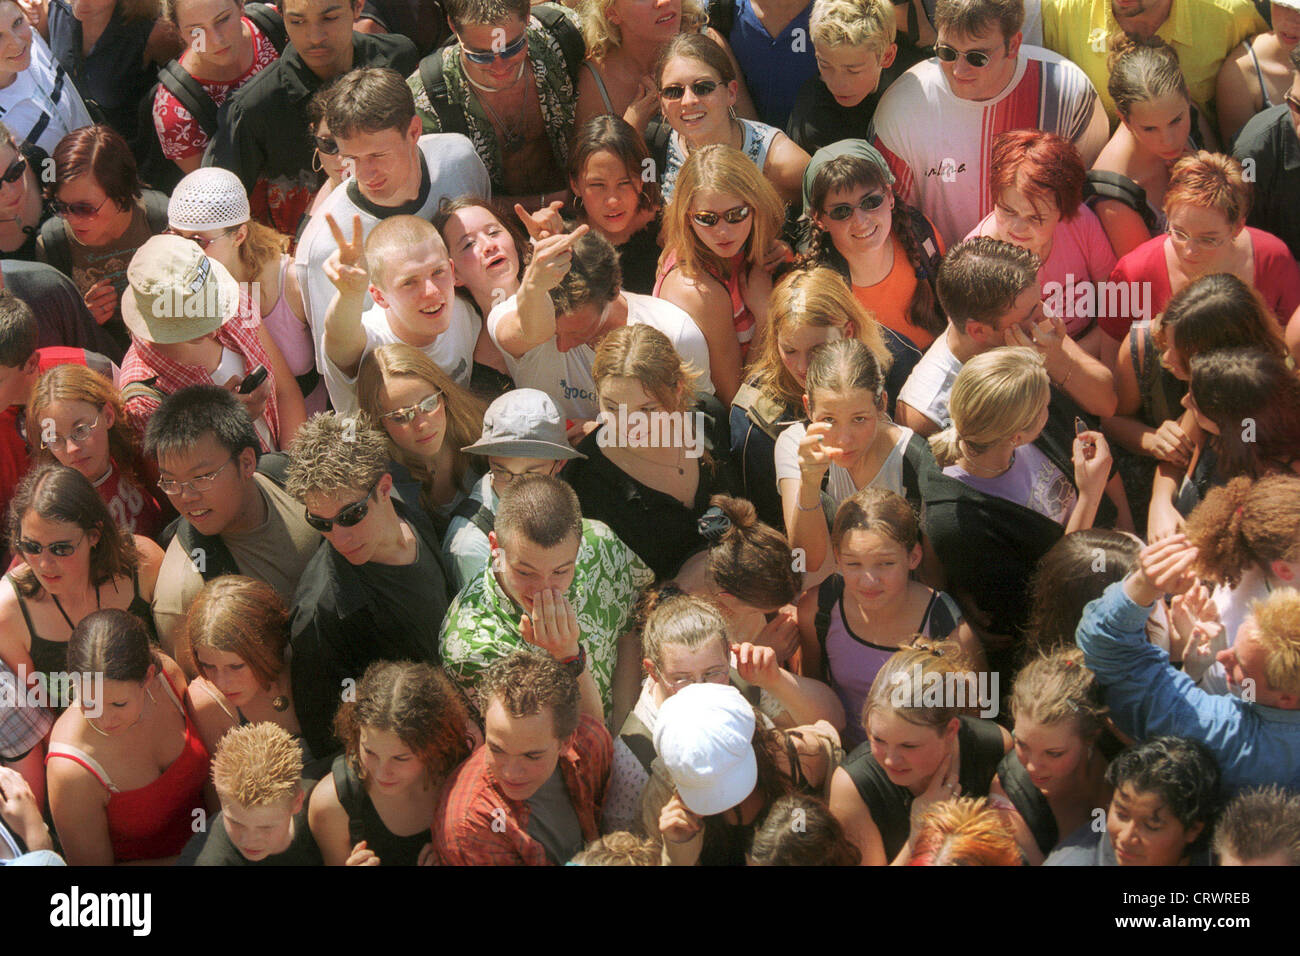 Eine Menschenmenge beim Feiern auf einer Open-Air-Veranstaltung Stockfoto